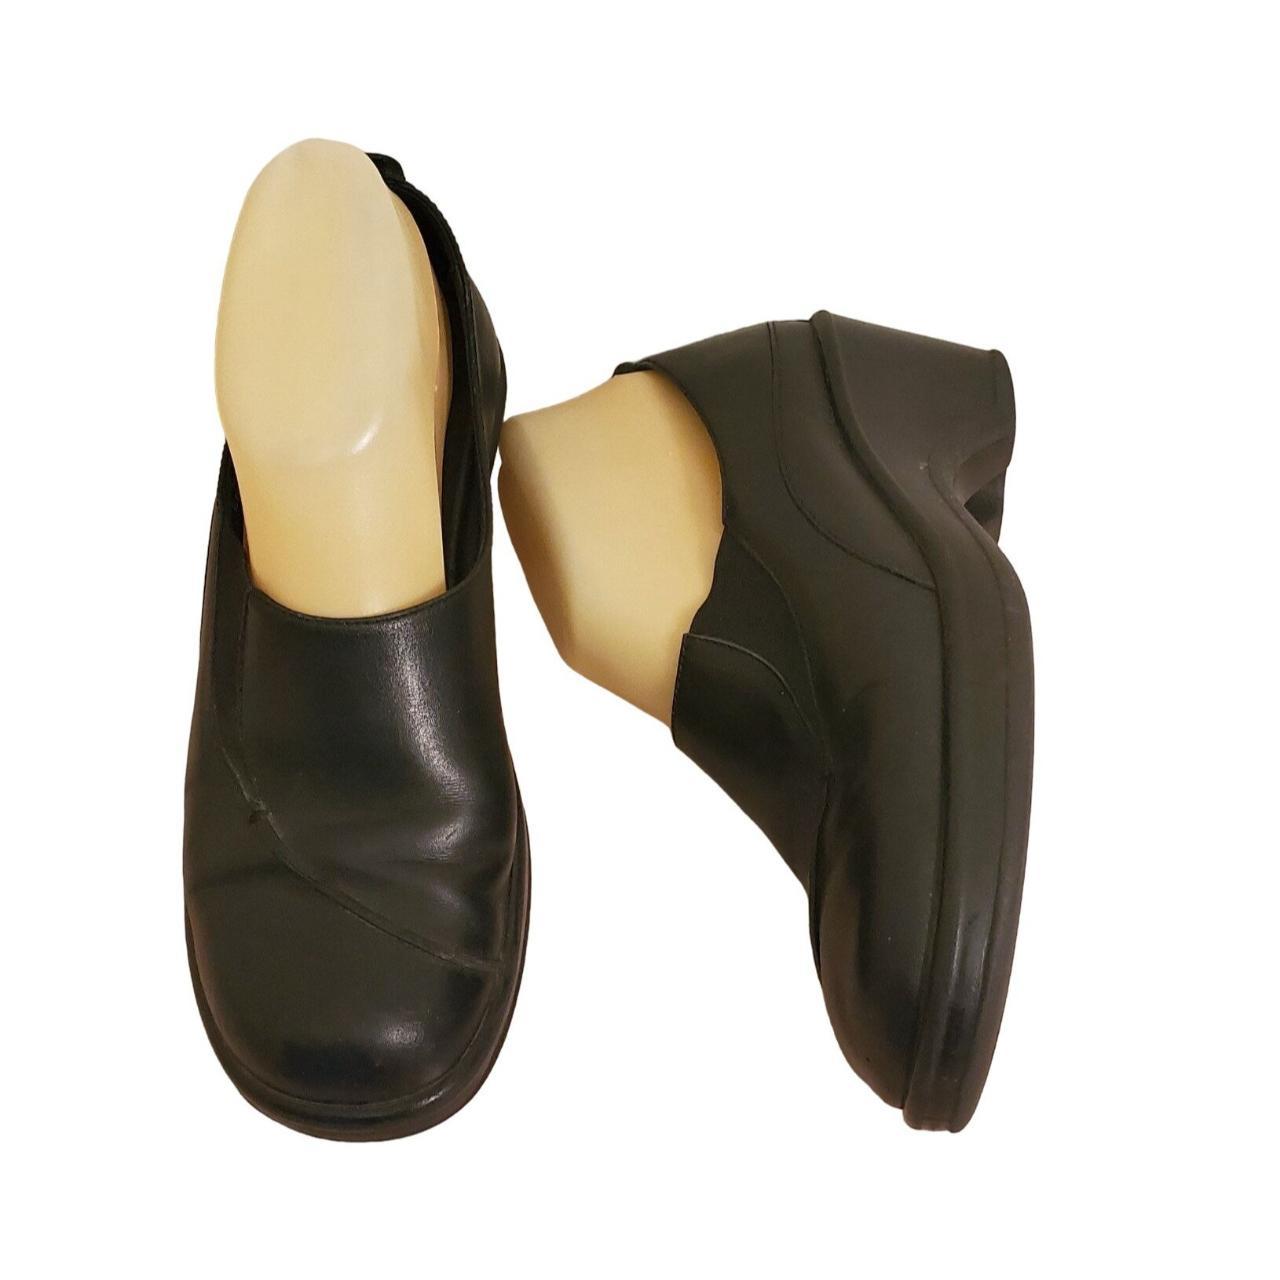 Dansko 38 Black Leather Comfort Nurse Shoes 7.5 8... - Depop